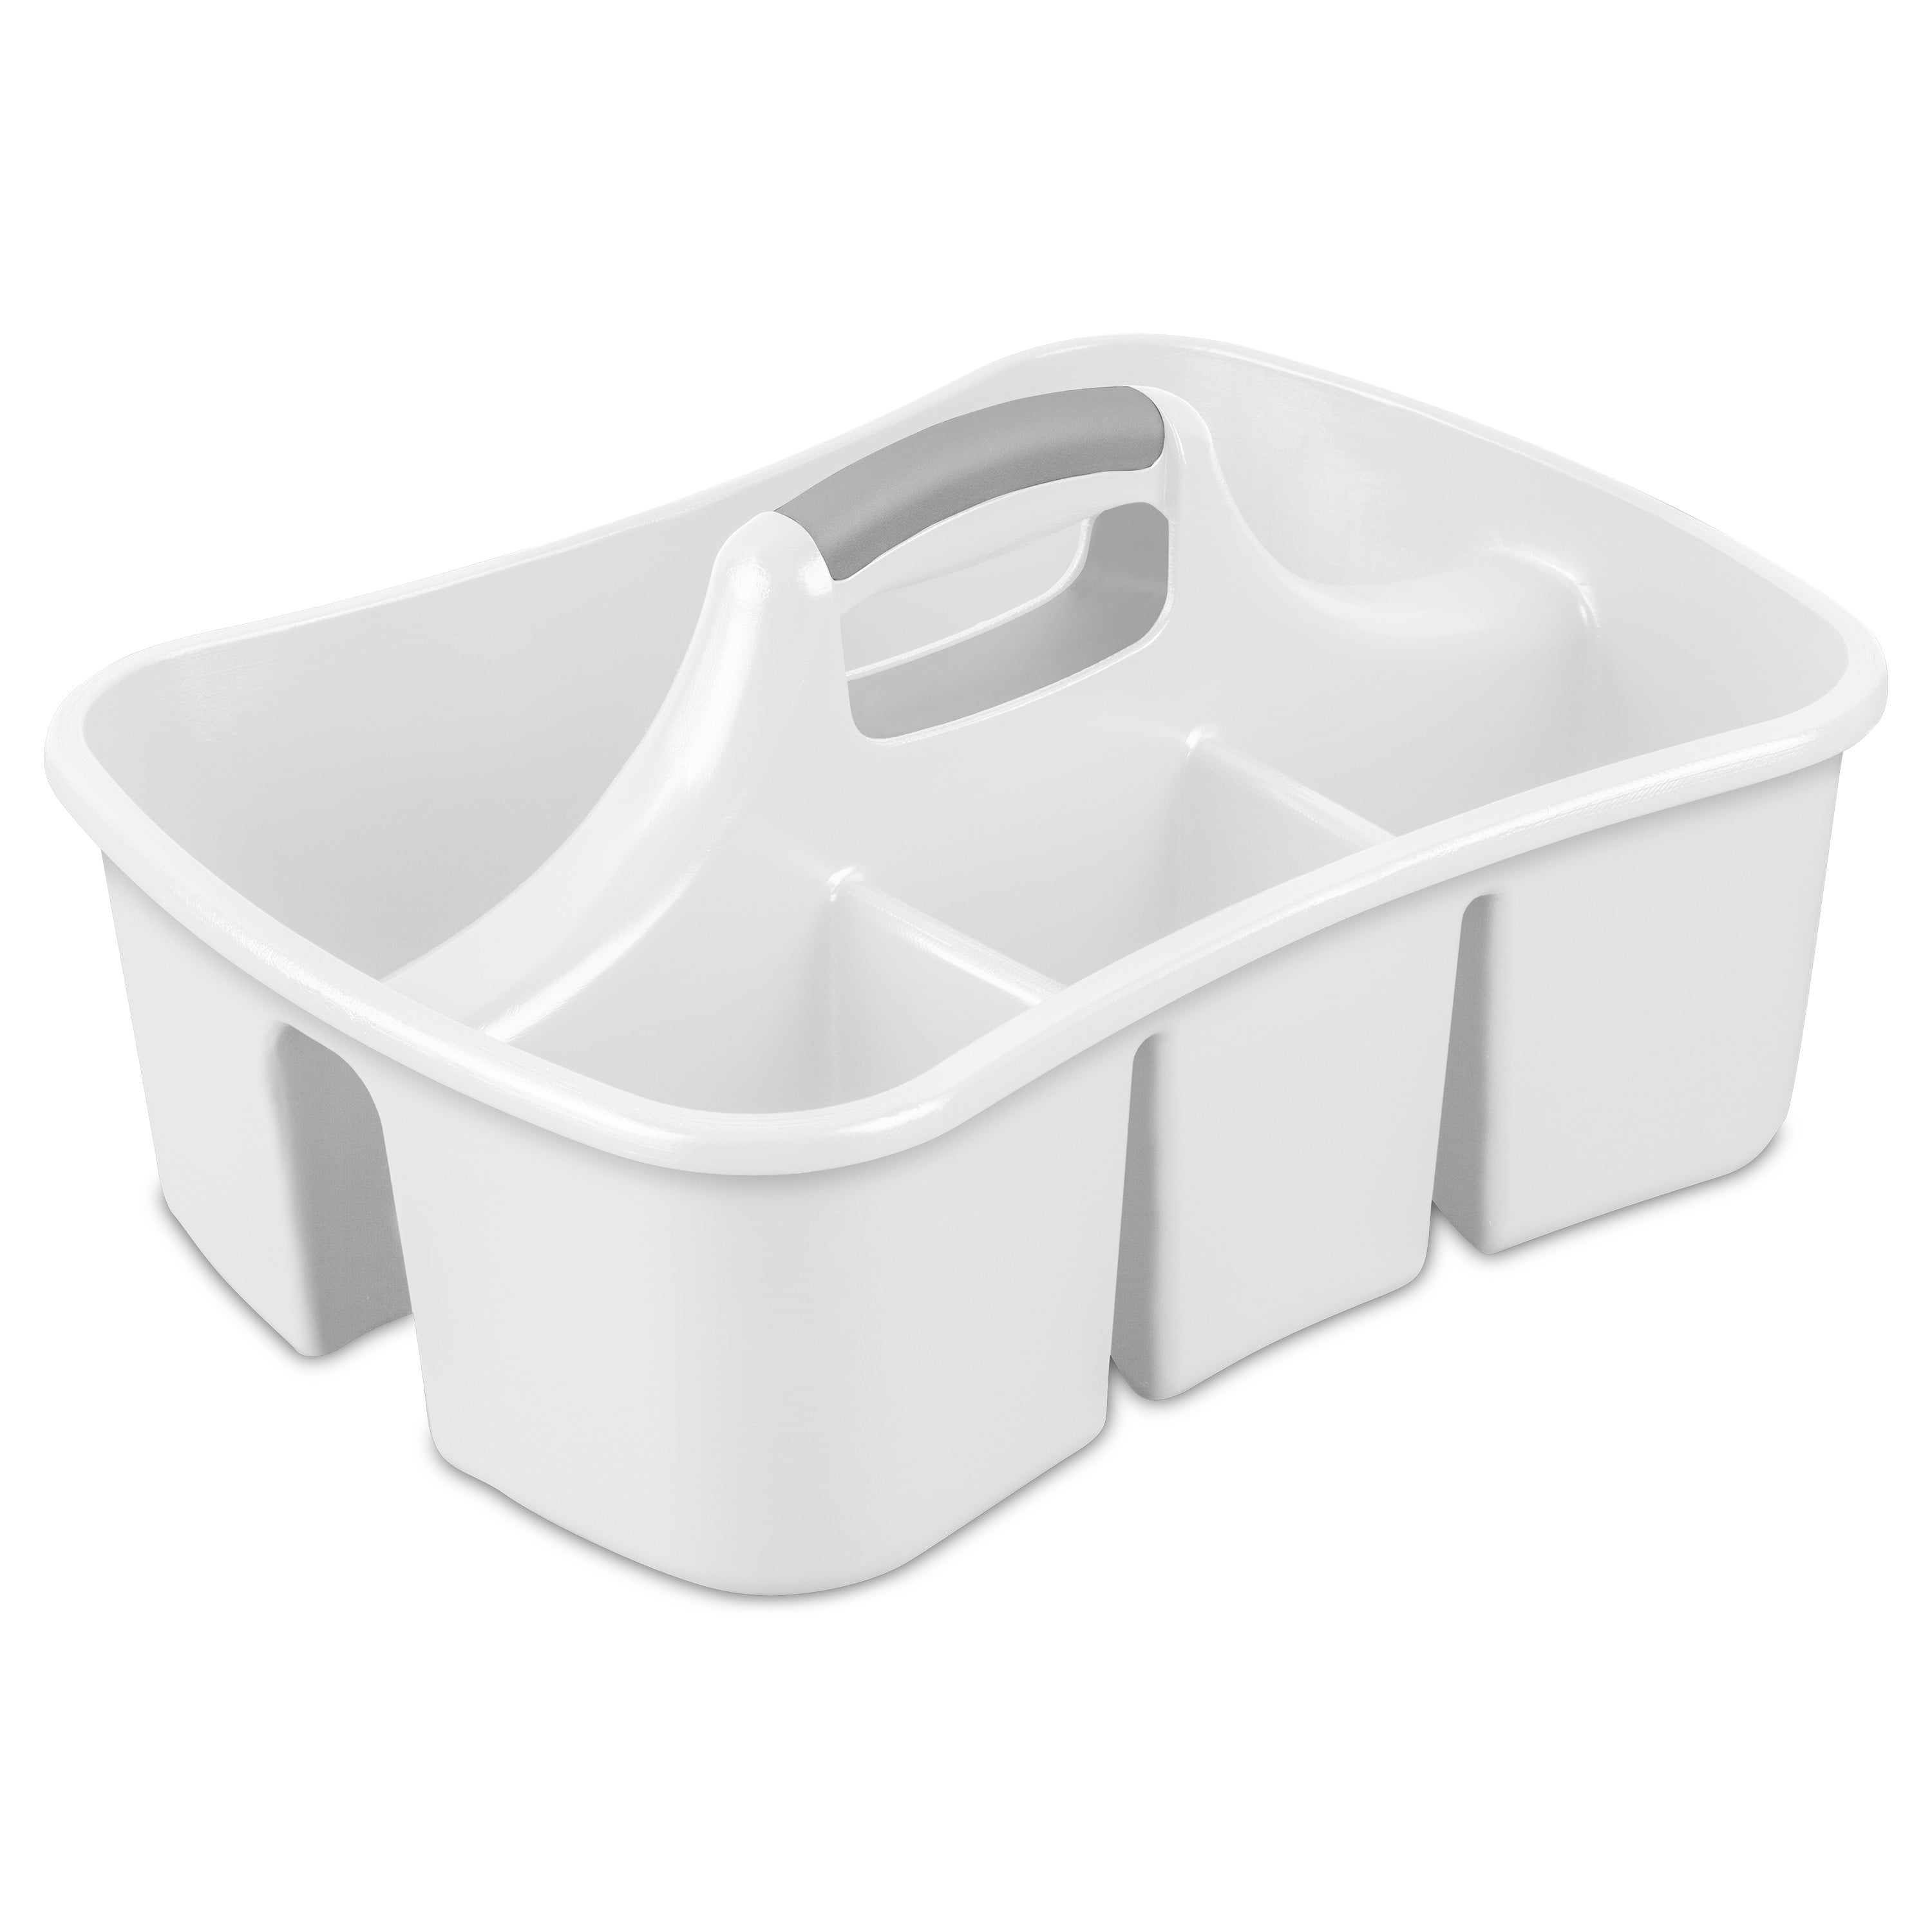 Sterilite Dual Compartment Plastic Sink Caddy, White